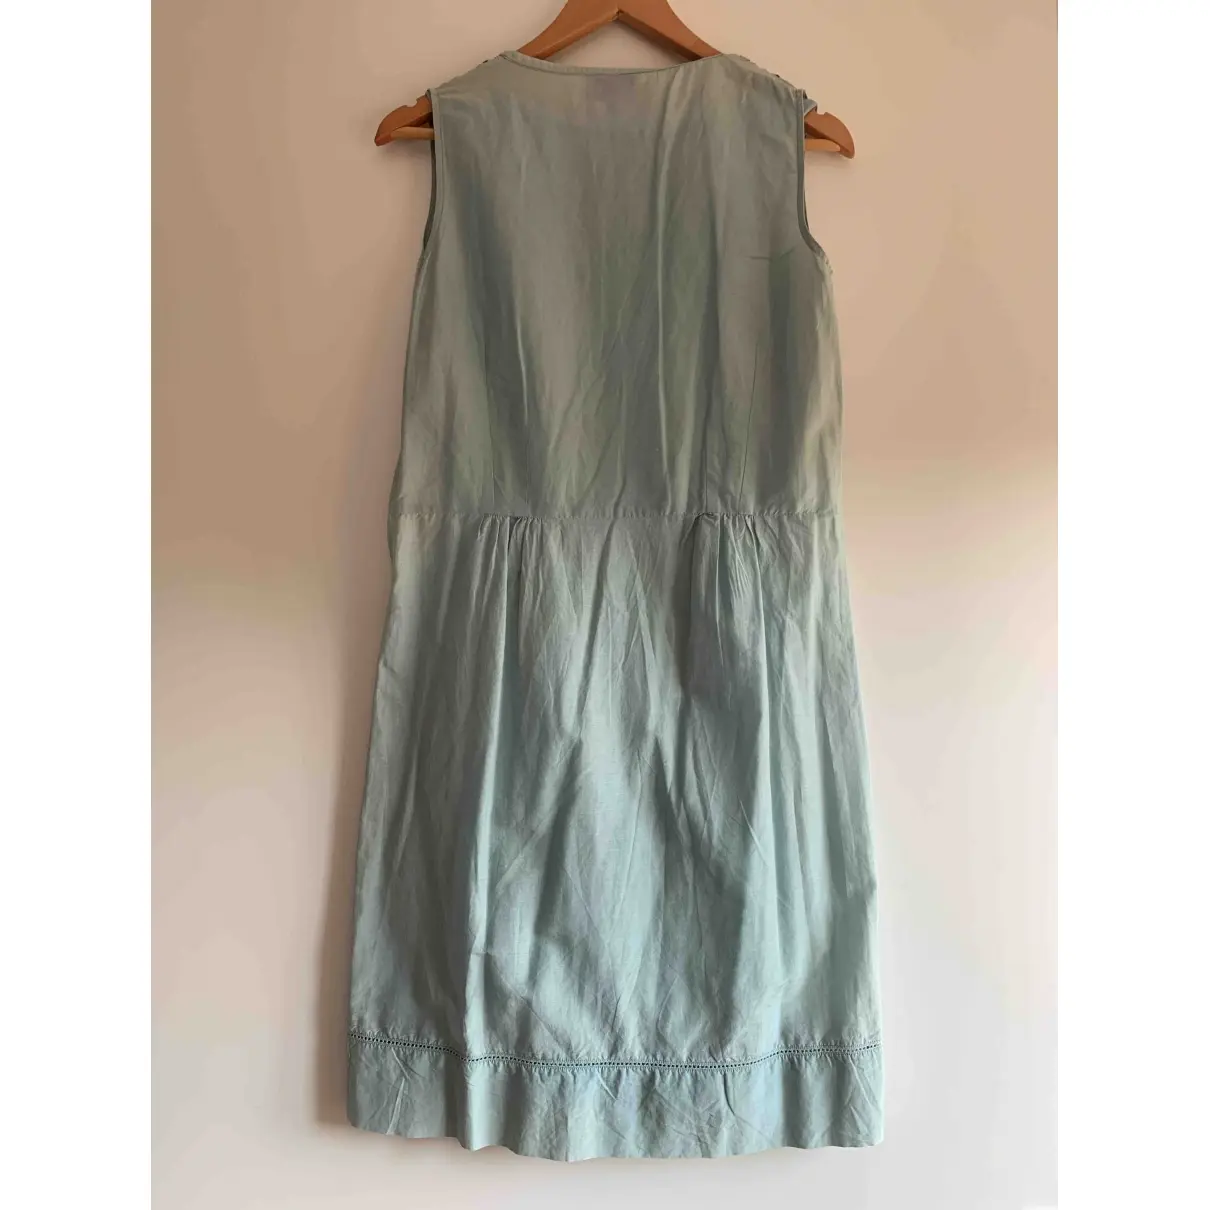 Buy Essentiel Antwerp Mini dress online